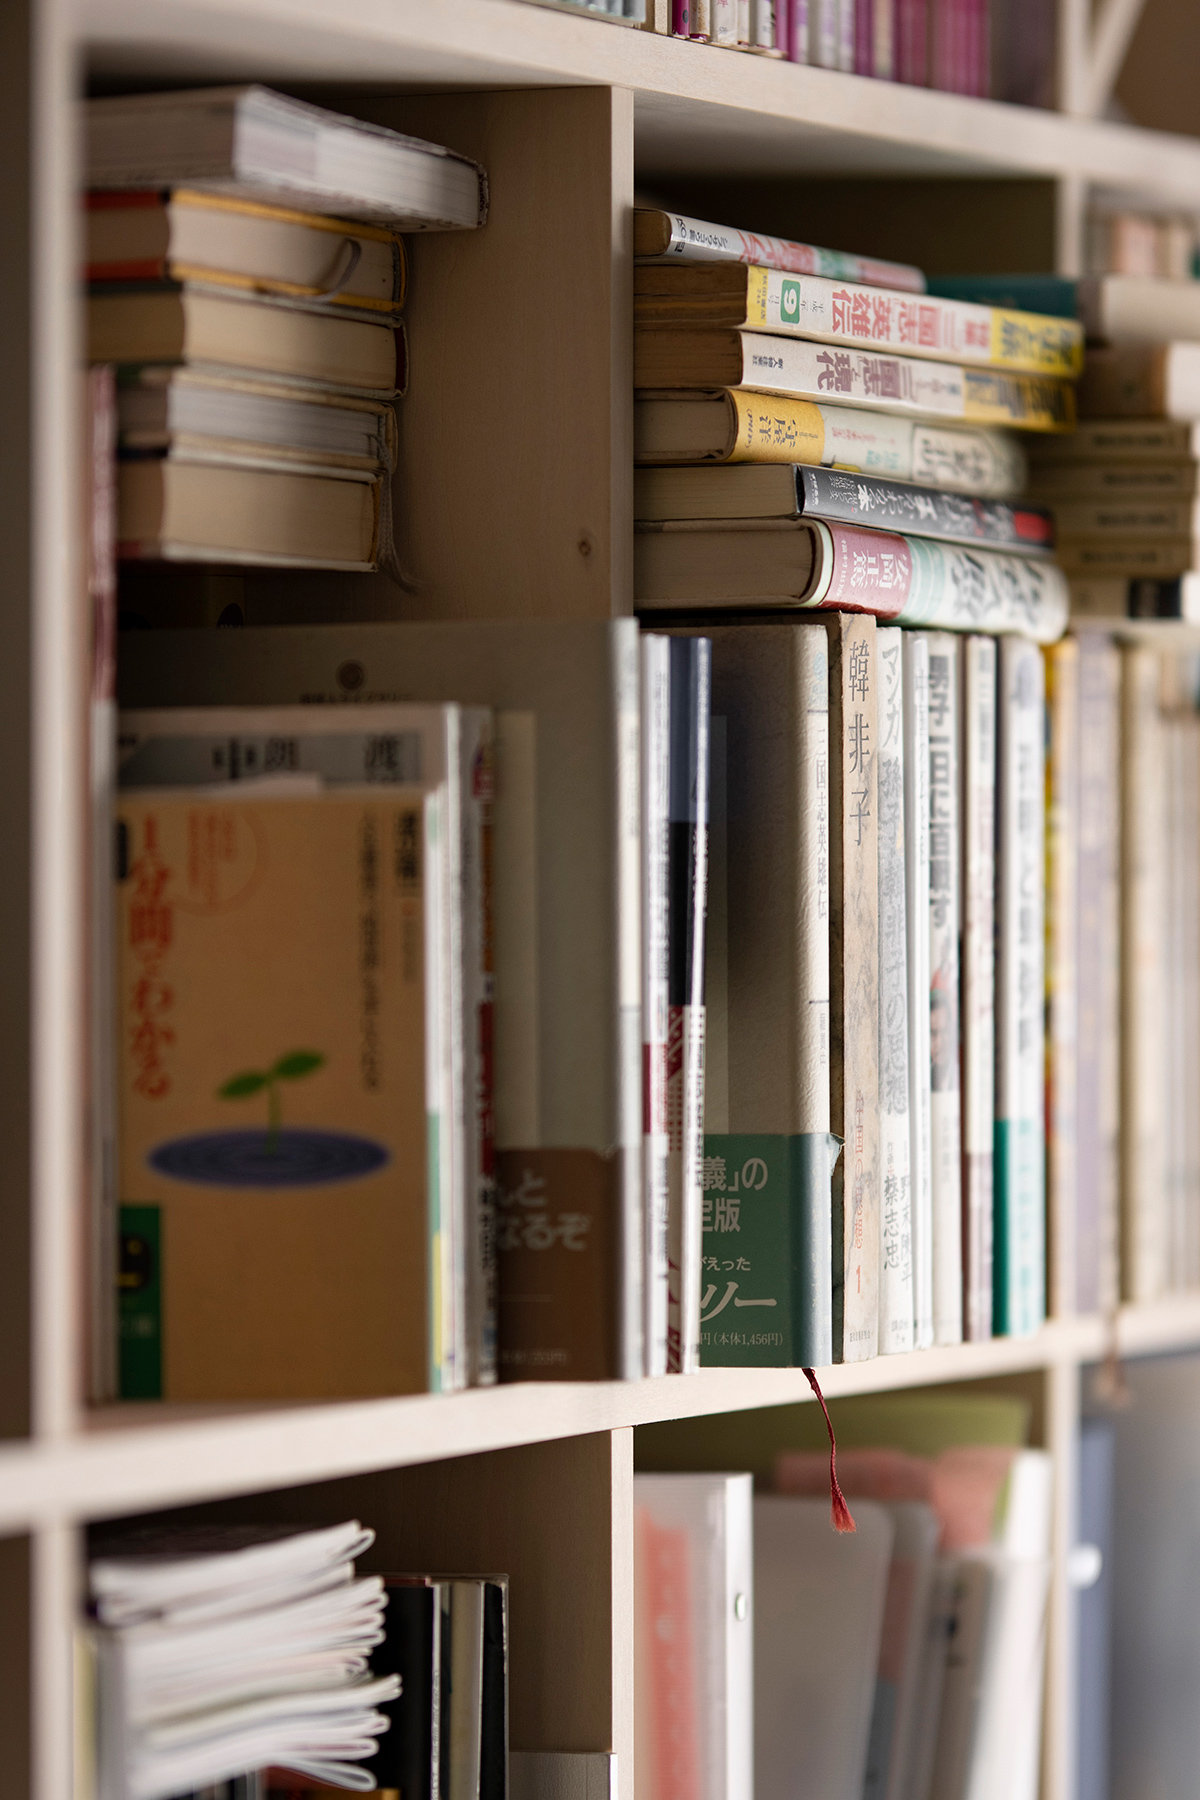 本棚に合わせて生活空間をリフォーム
蔵書をぎっしり